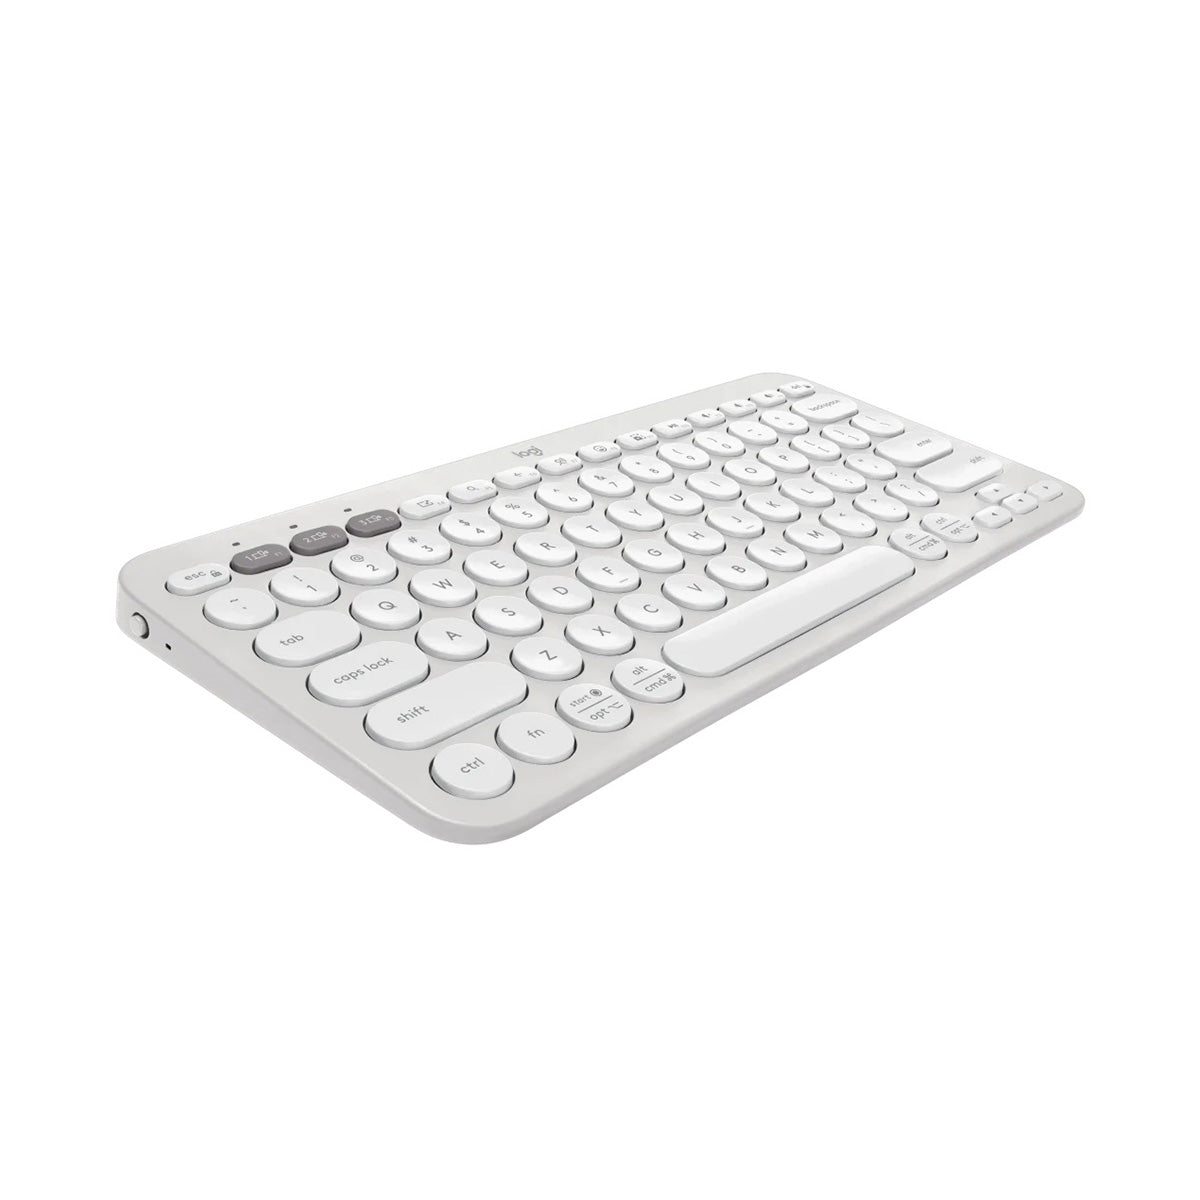 Logitech PEBBLE KEYS 2 K380S Keyboard